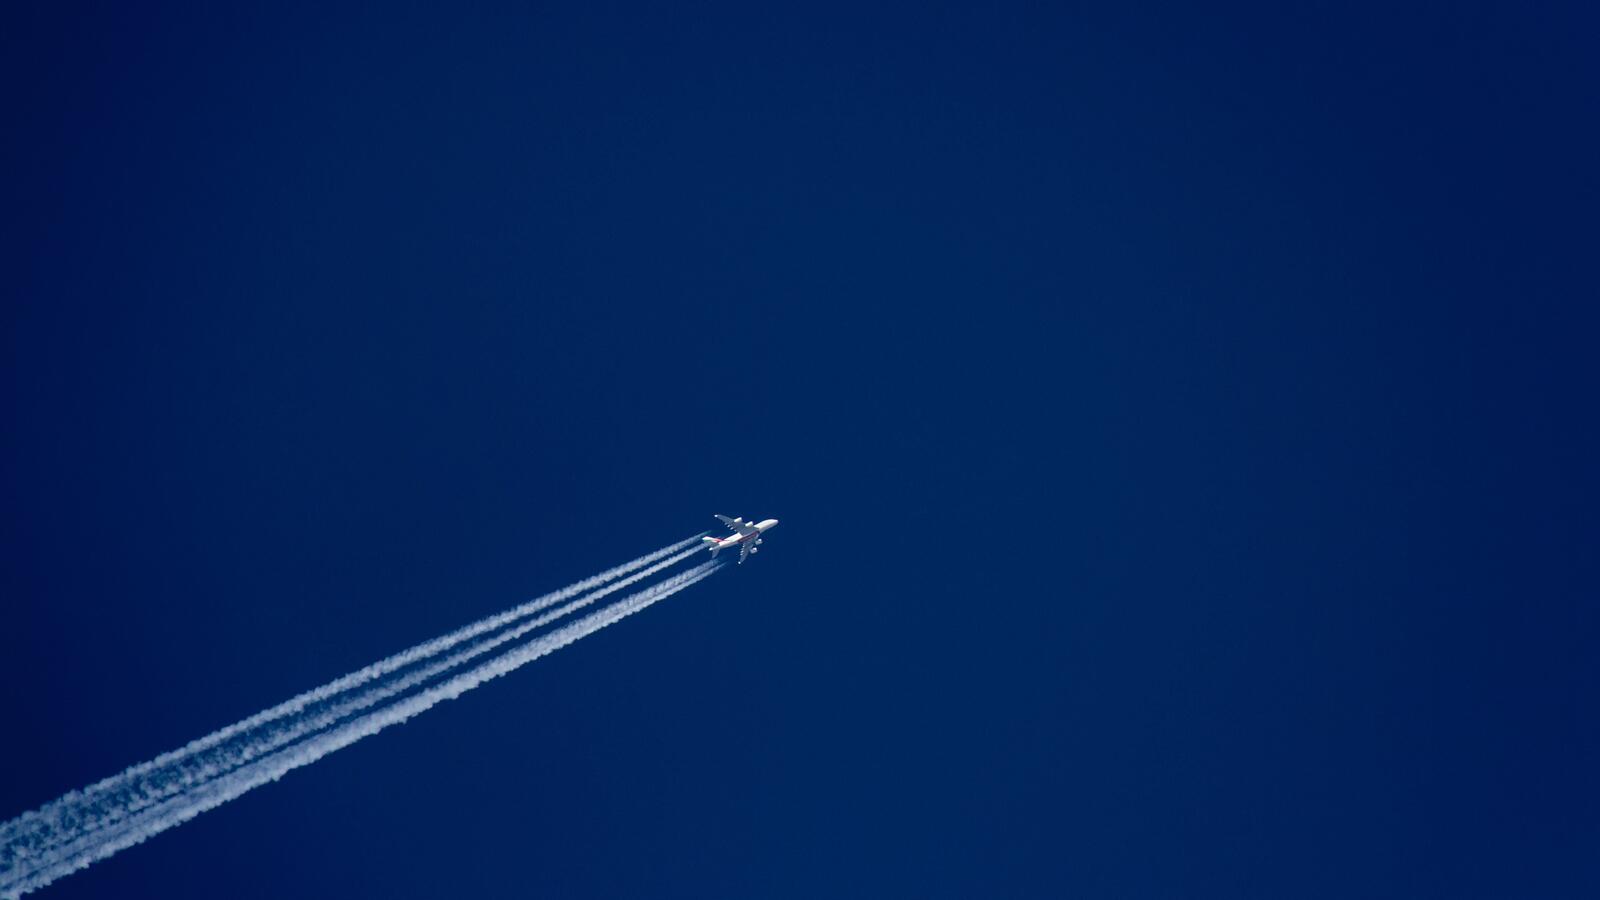 Бесплатное фото Самолет на синем небе оставляет следы от двигателей